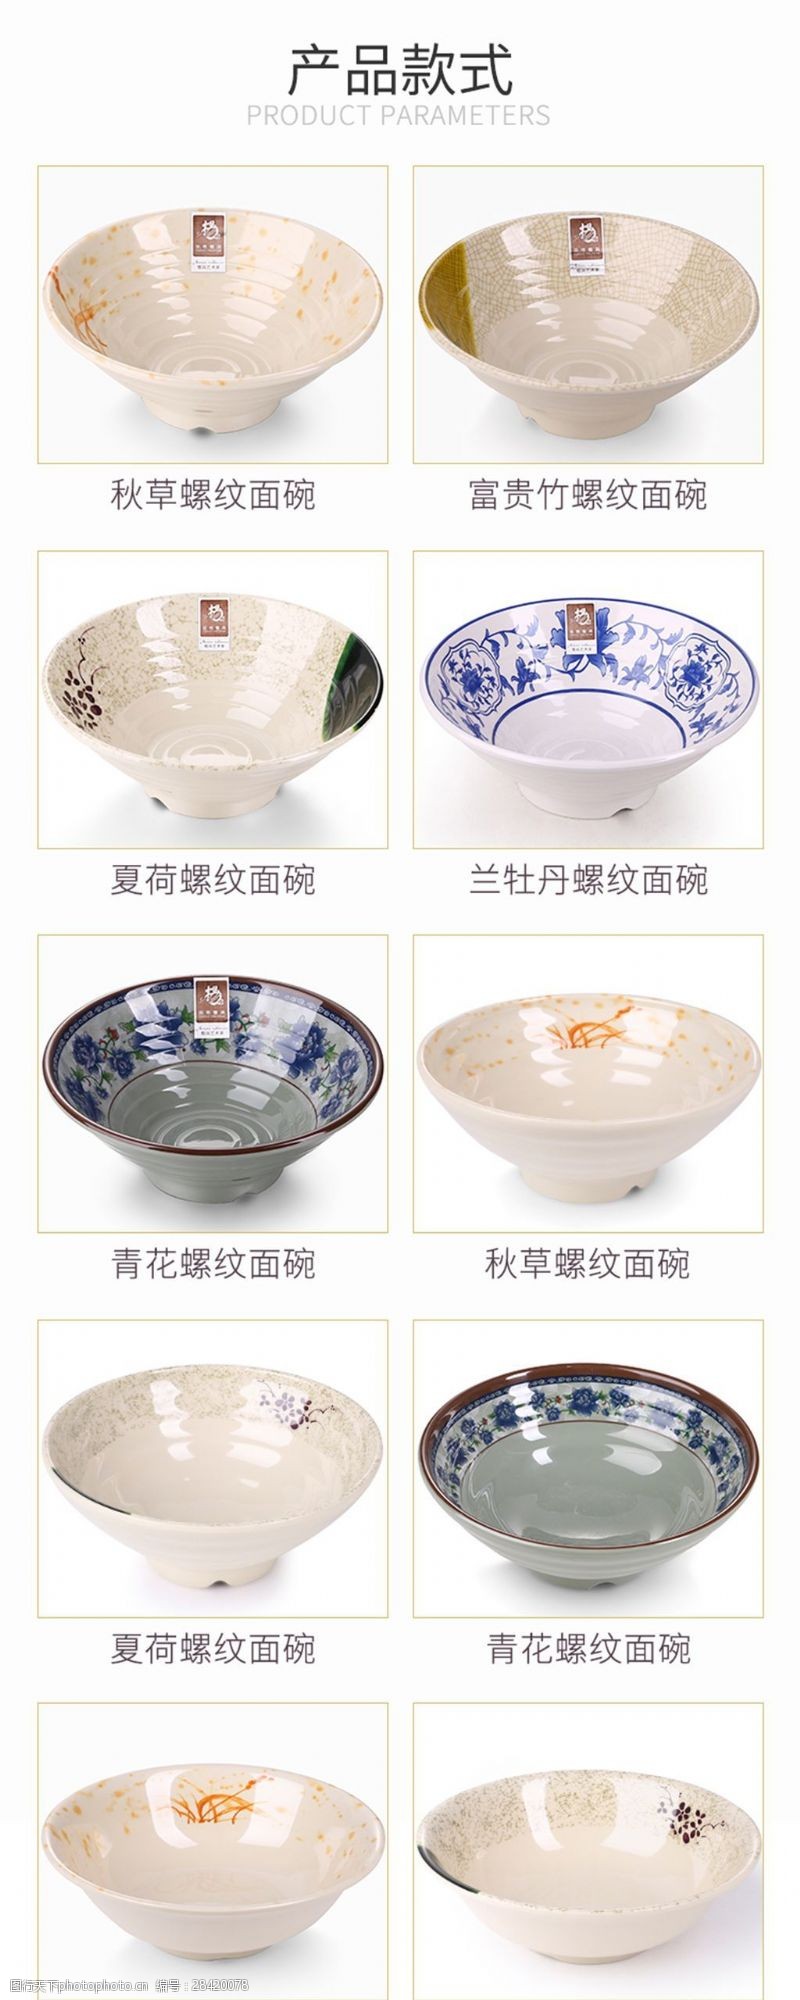 中国风详情页电商淘宝古朴典雅中国风面碗日用餐具详情页